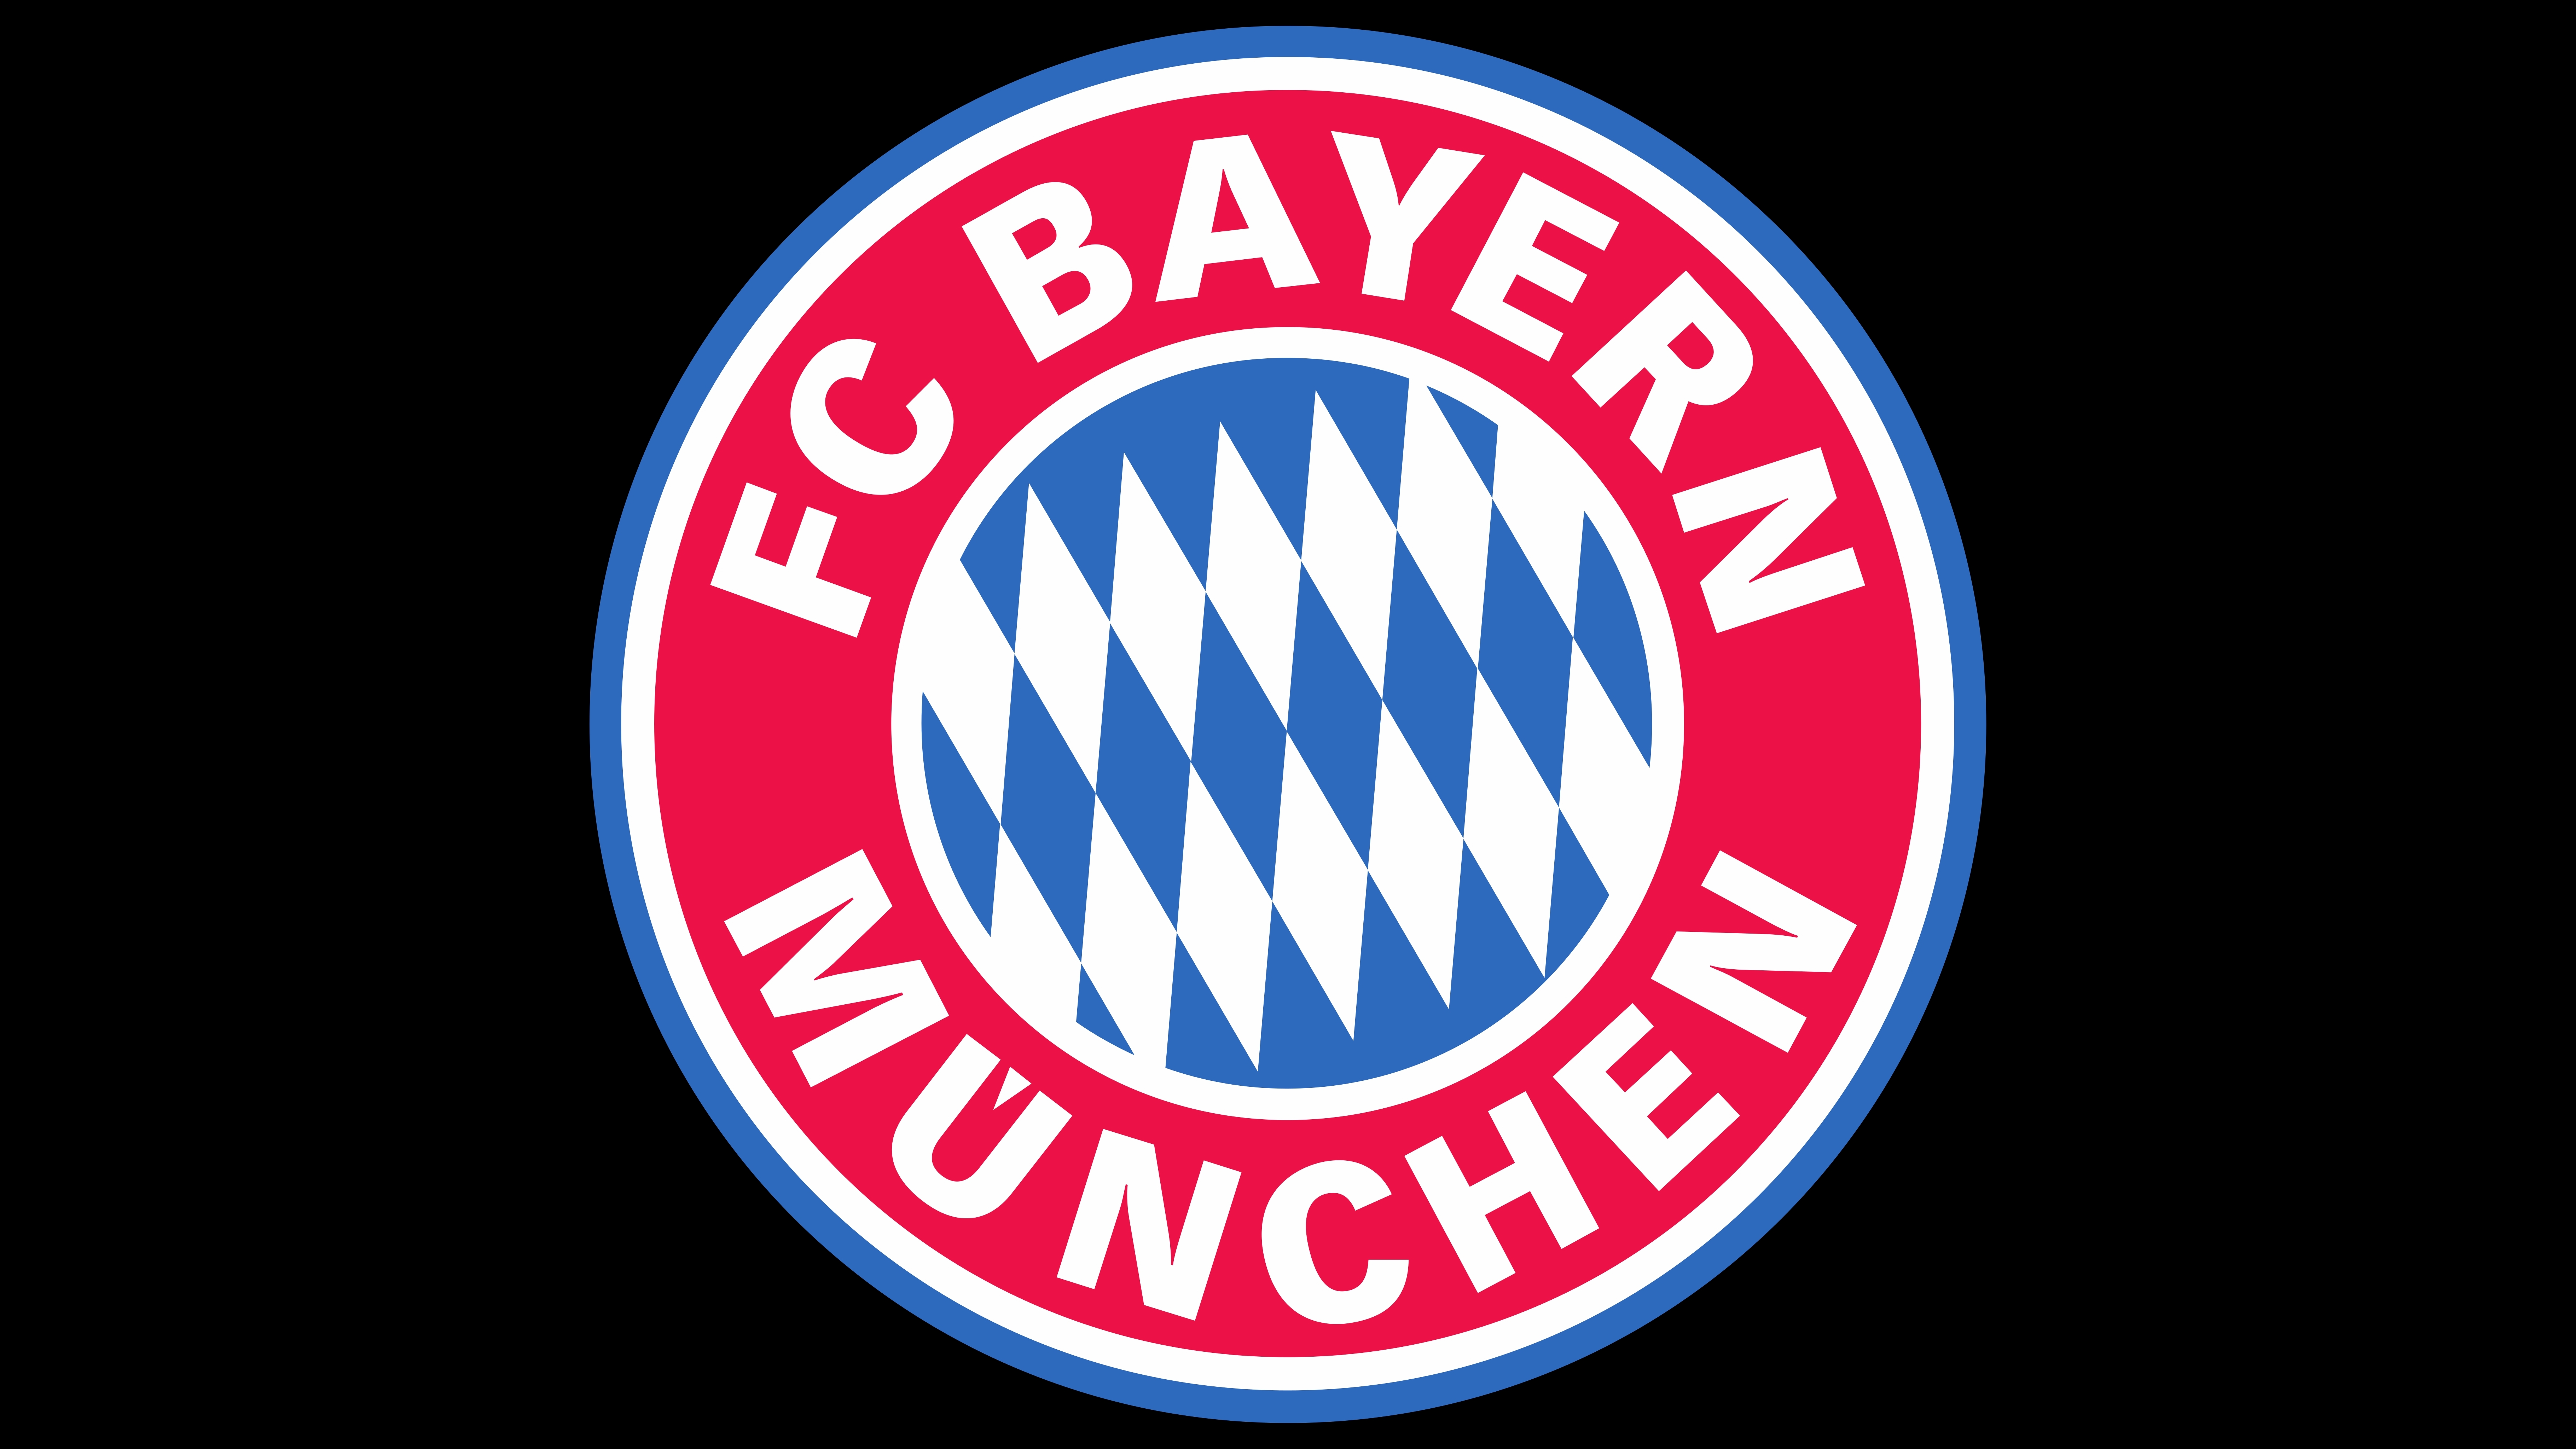 Cfc Bayern